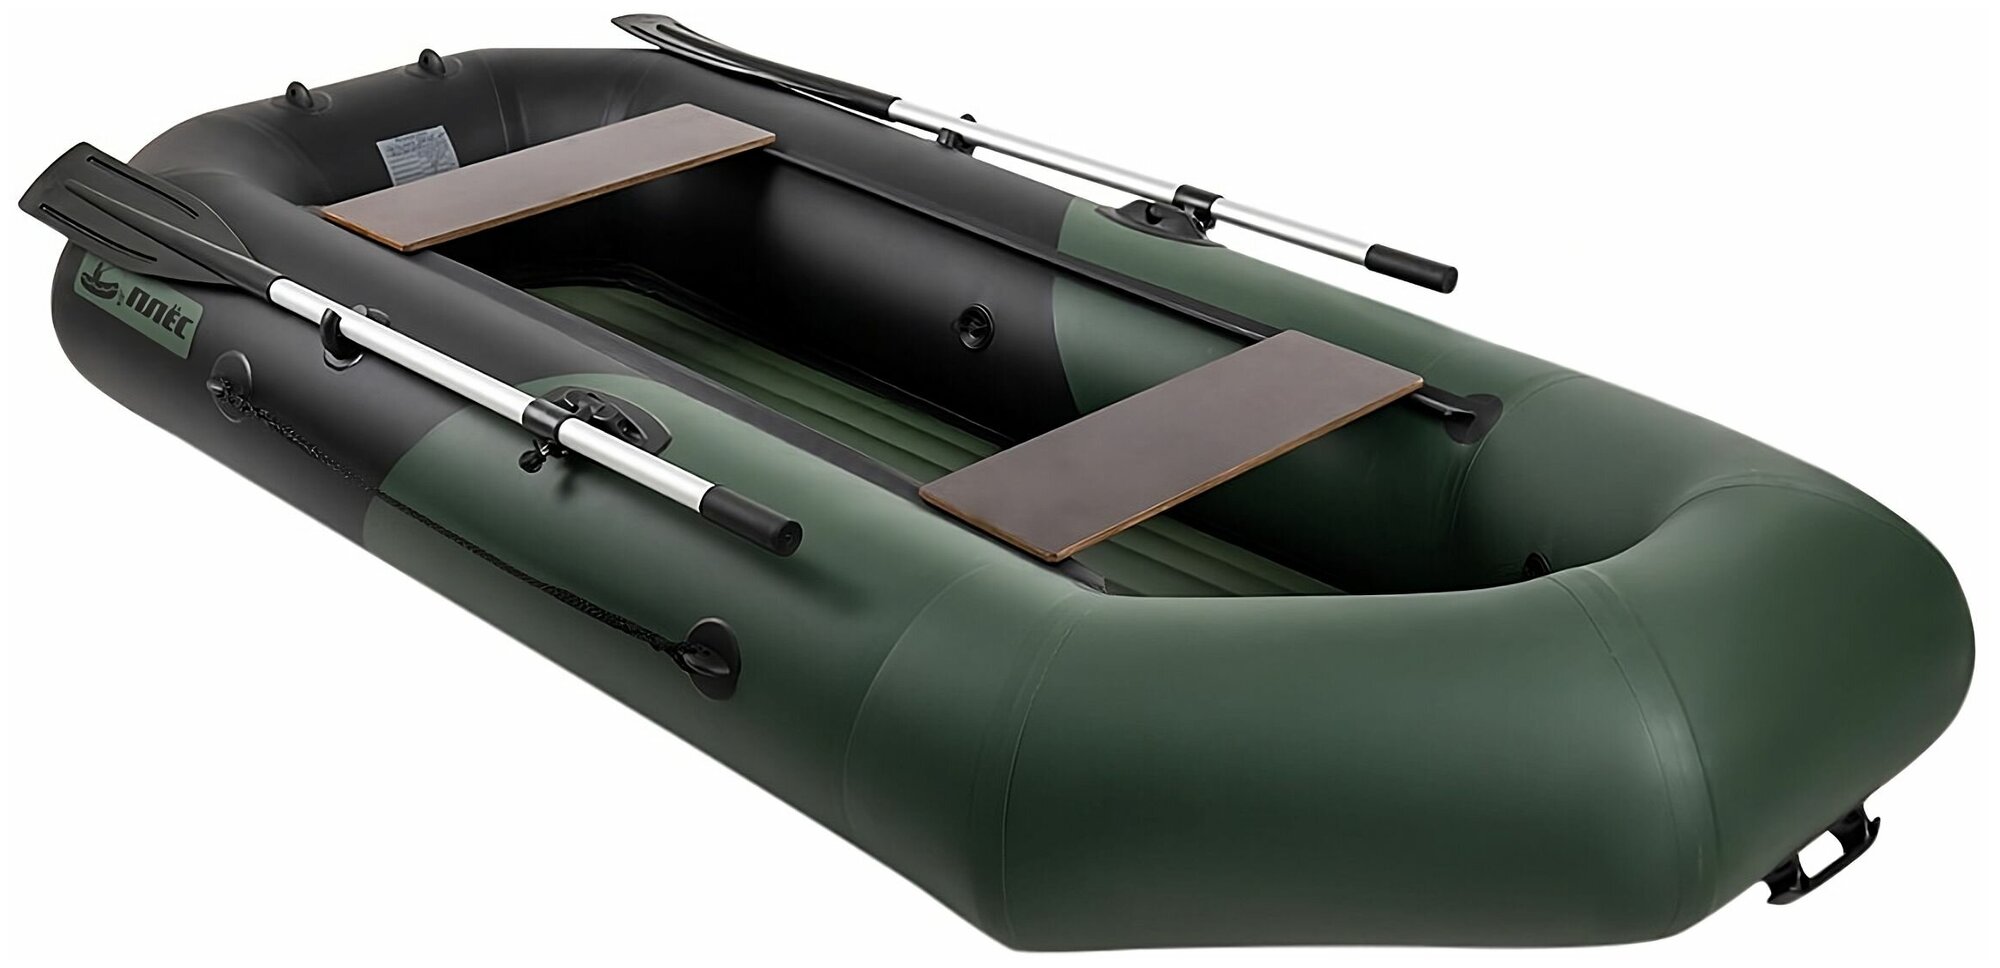 Двухместная надувная лодка пвх для рыбалки Плёс-260 ндтр, с надувным дном и креплением под транец